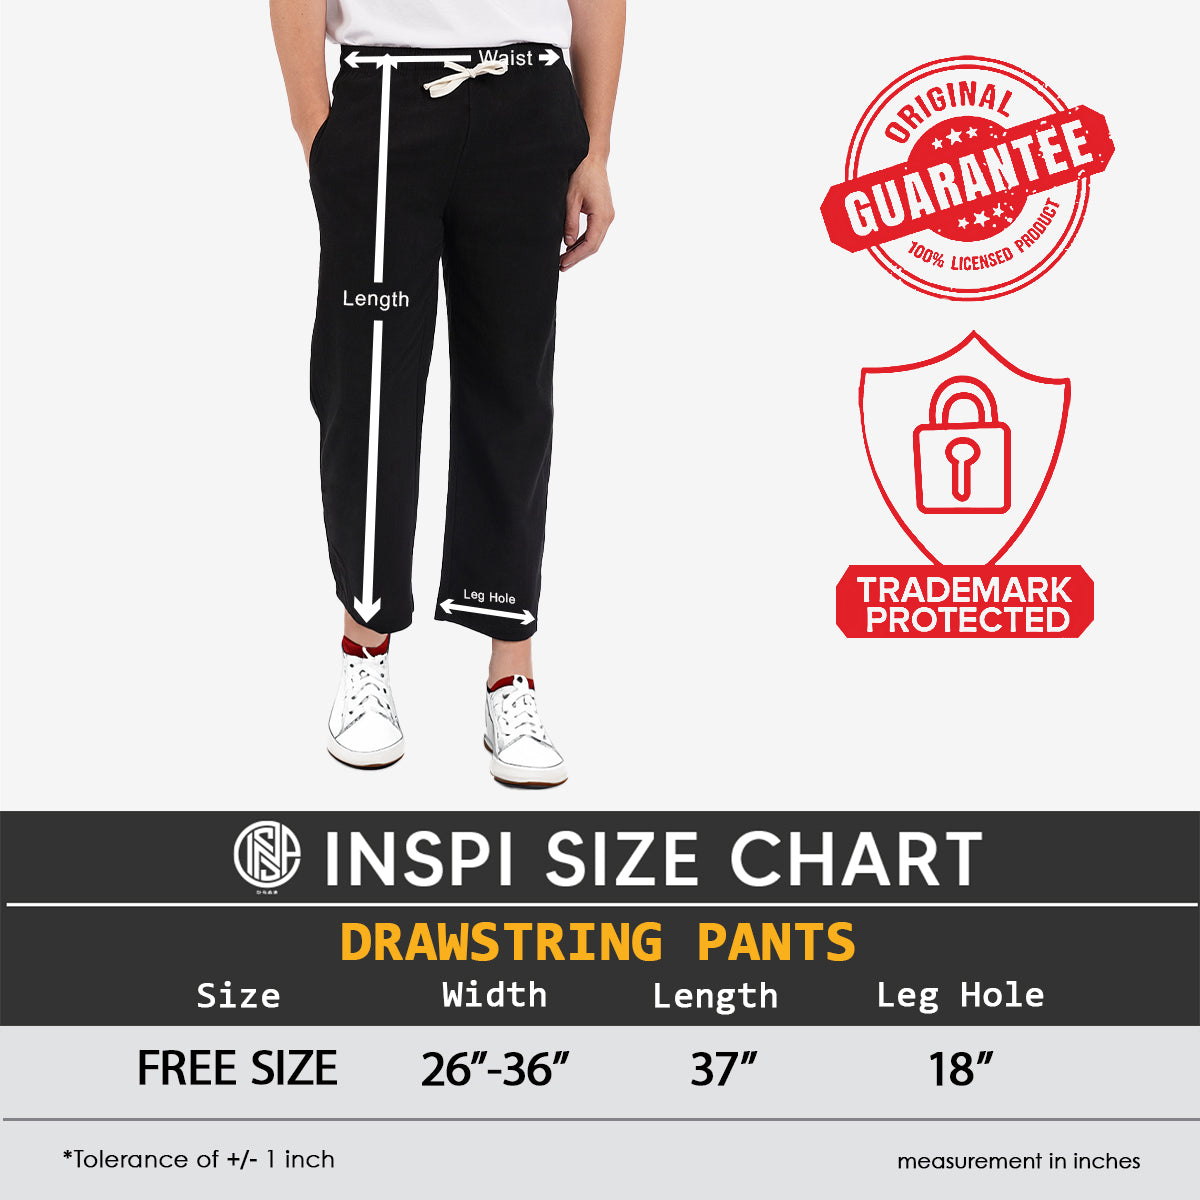 INSPI Drawstring Pants Light Khaki